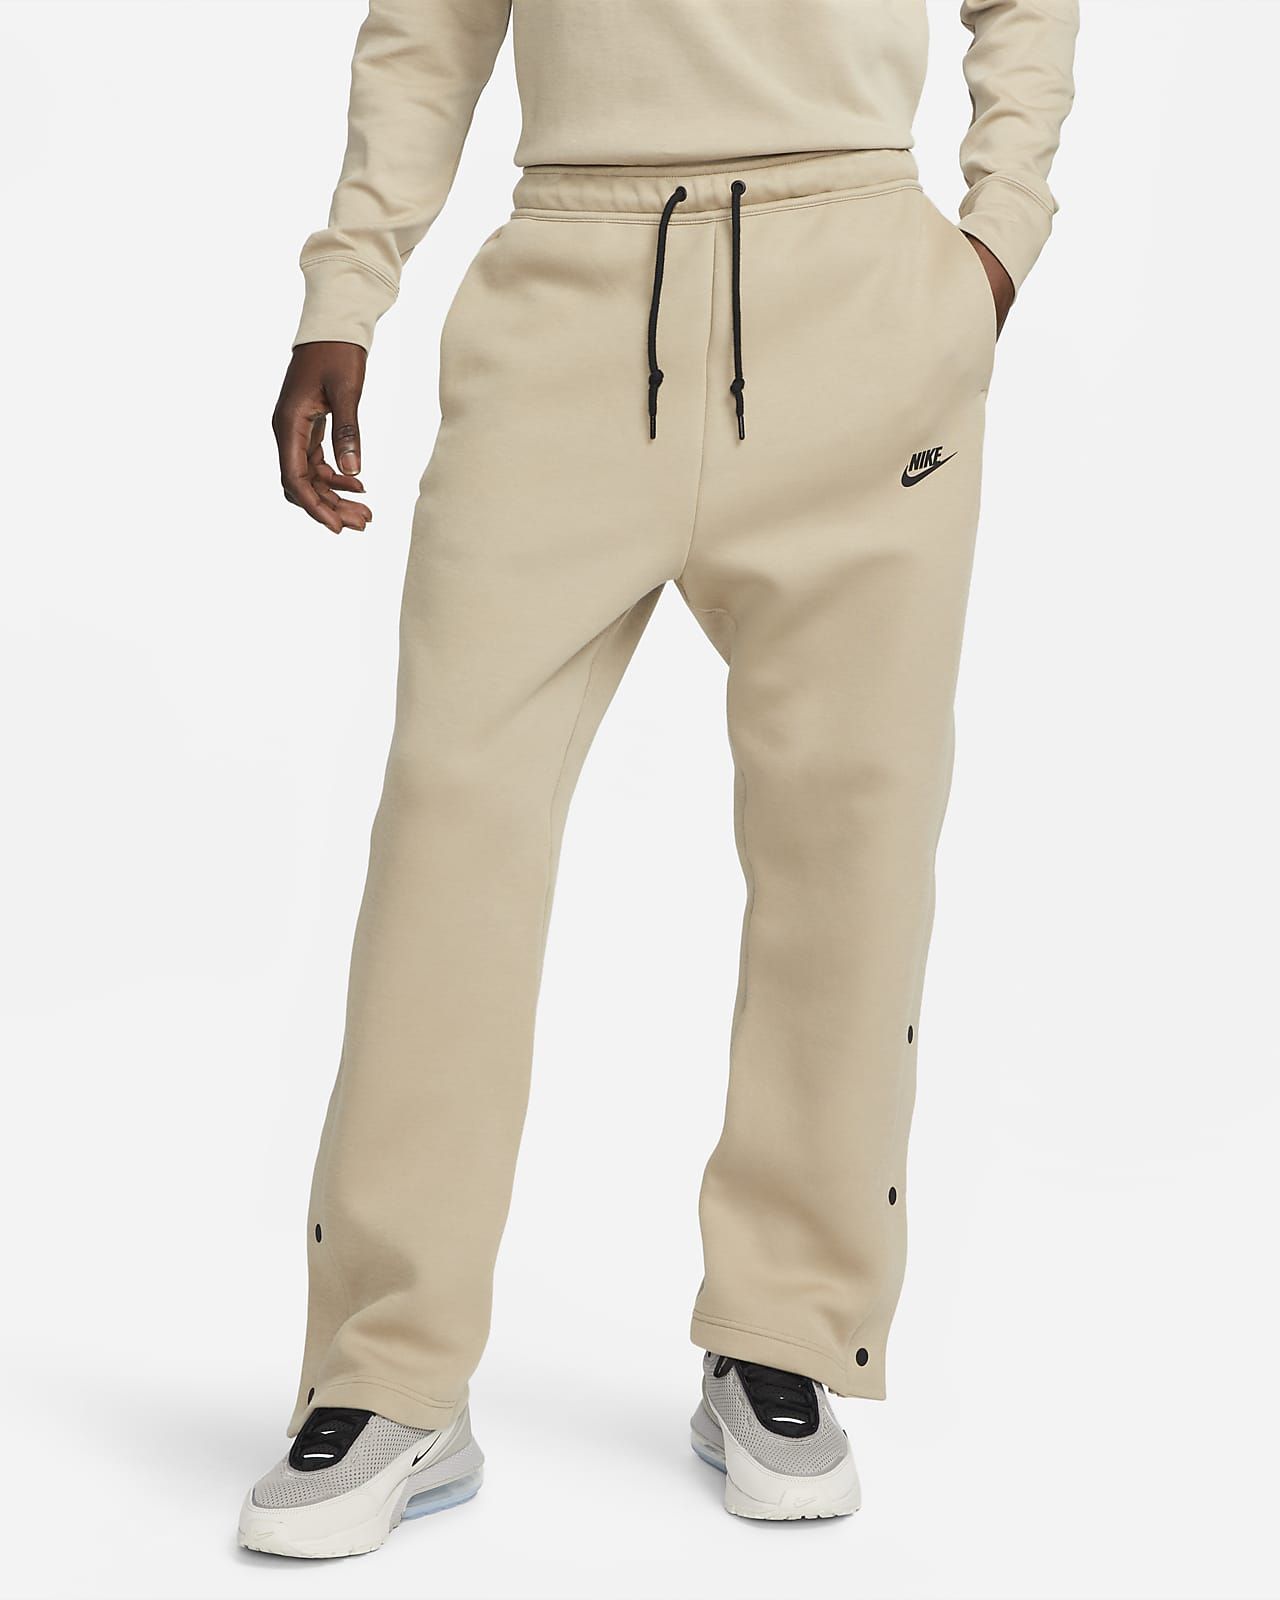 Nike Sportswear Tech Fleece Men's Loose Fit Tear-Away Pants. Nike.com | Nike (US)